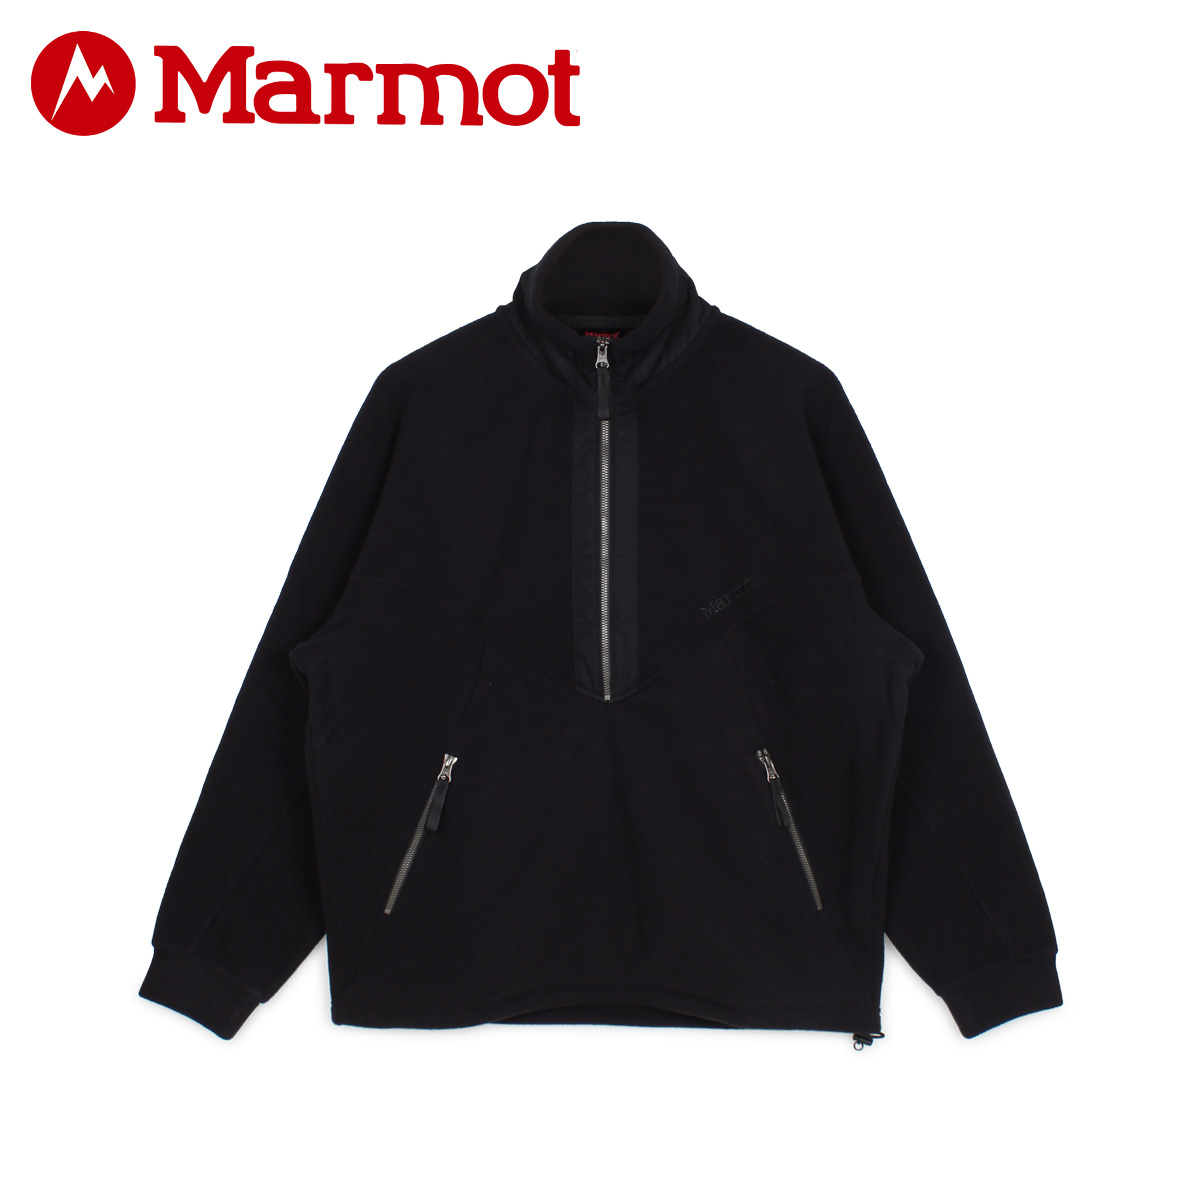 マーモット Marmot プルオーバー ジャケット フリースジャケット ランドニー アウター メンズ レディース RANDONNEE PULLOVER  ブラック 黒 TOUQJL38 春のコレクション